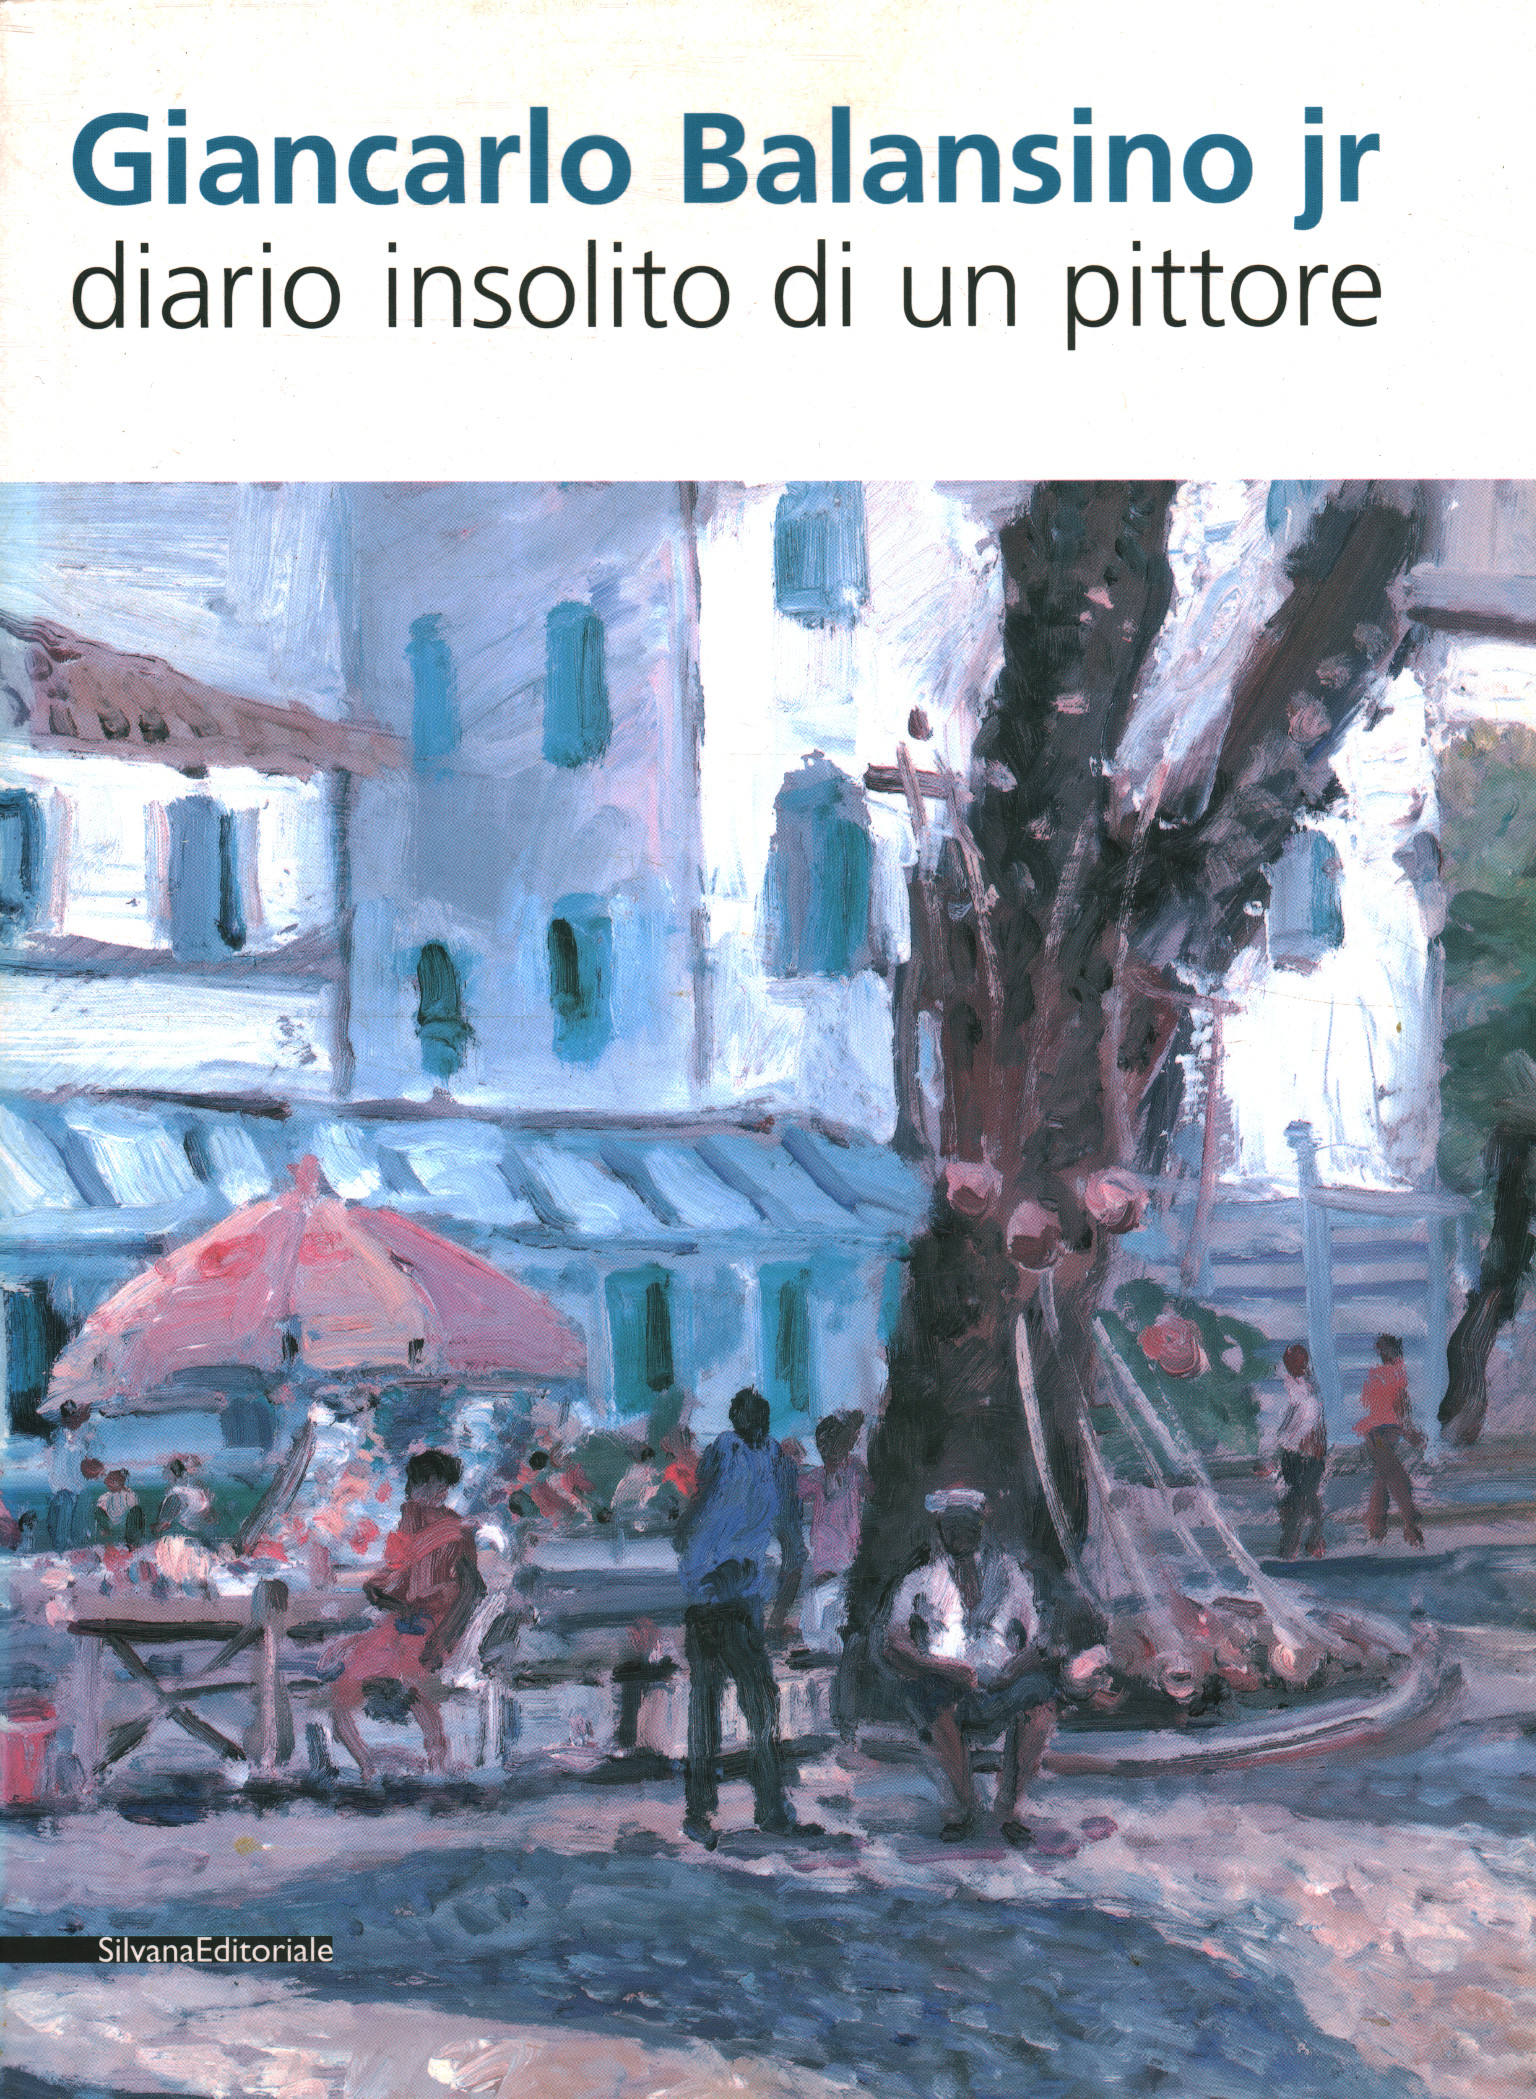 Giancarlo Balansino Jr. Journal insolite